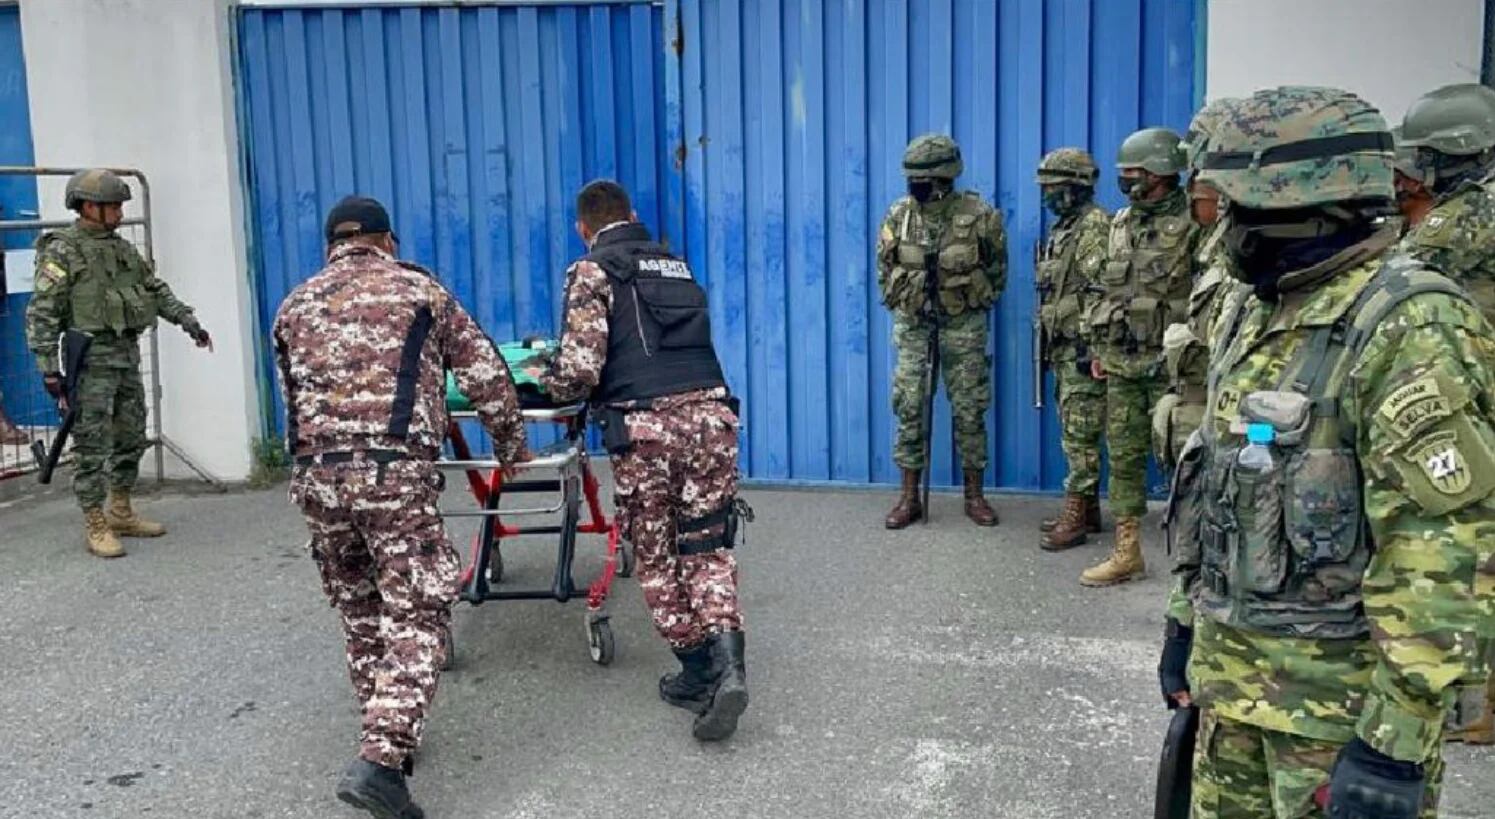 At least six prisoners were murdered in a prison in Ecuador